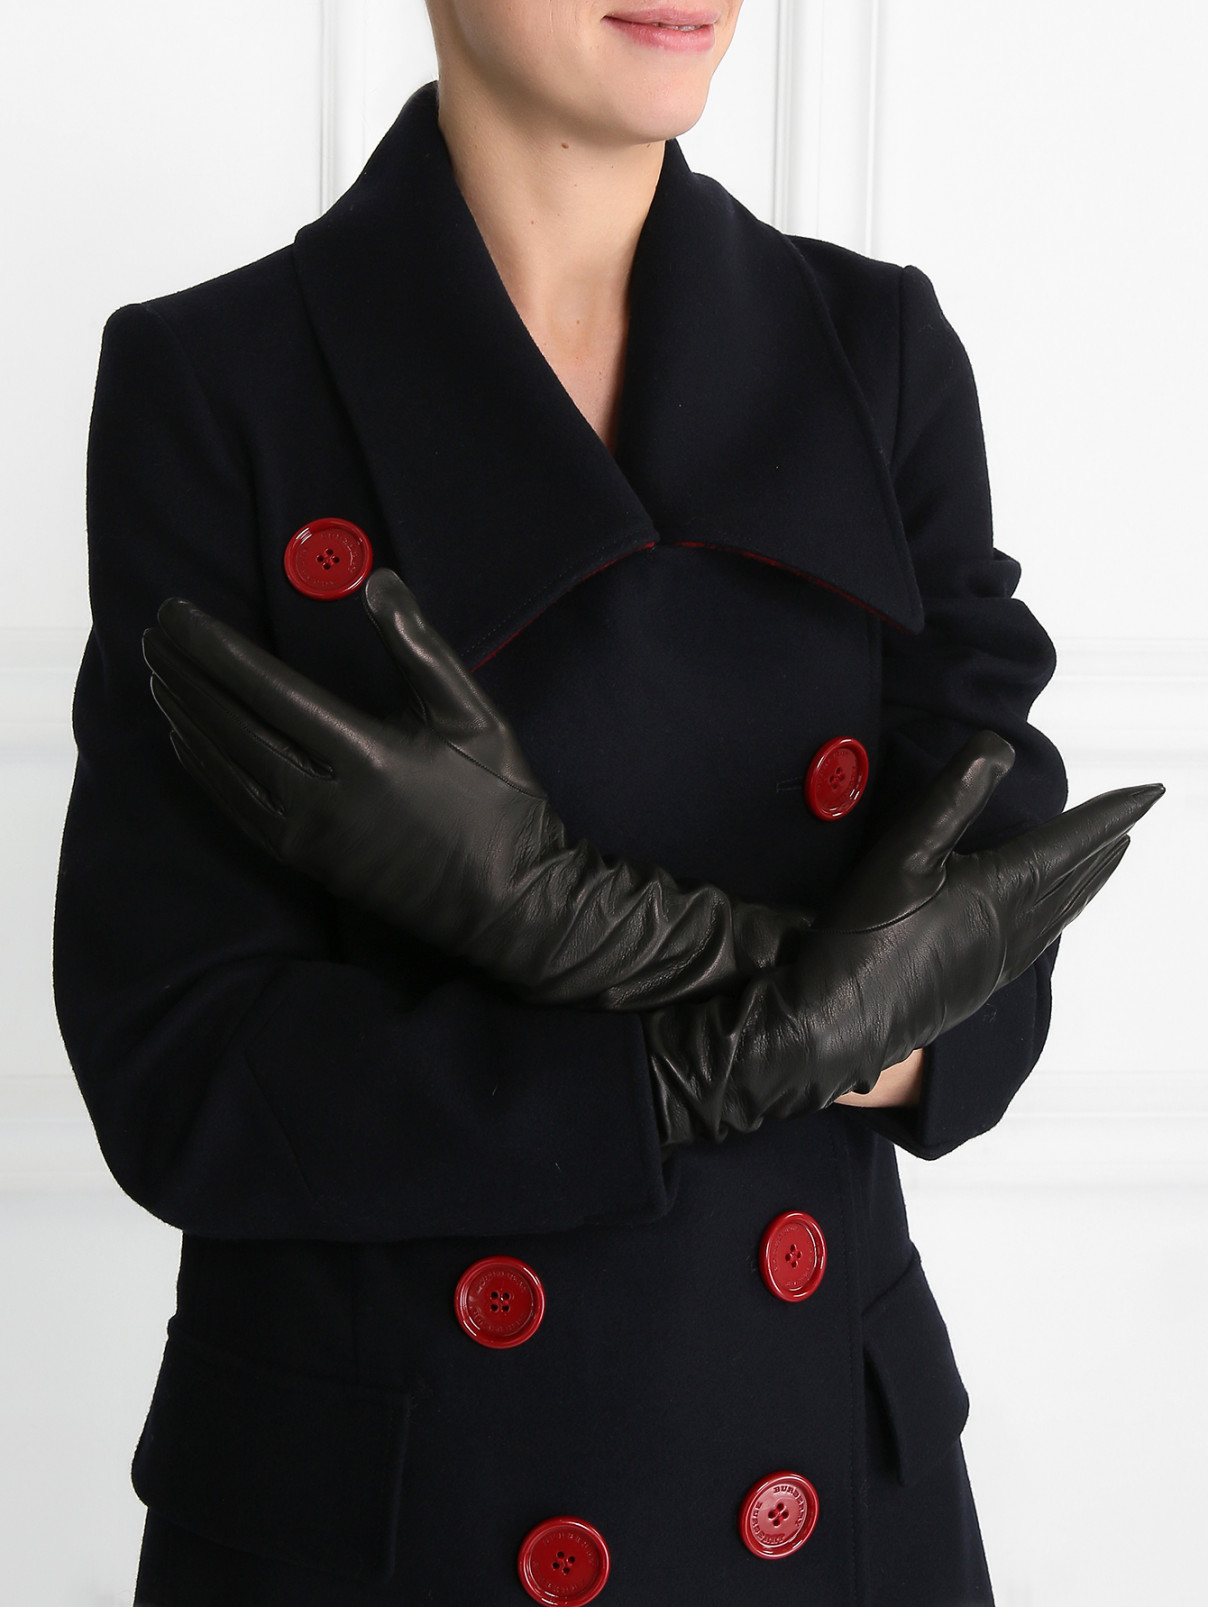 Перчатки из кожи Max Mara  –  Модель Общий вид  – Цвет:  Черный